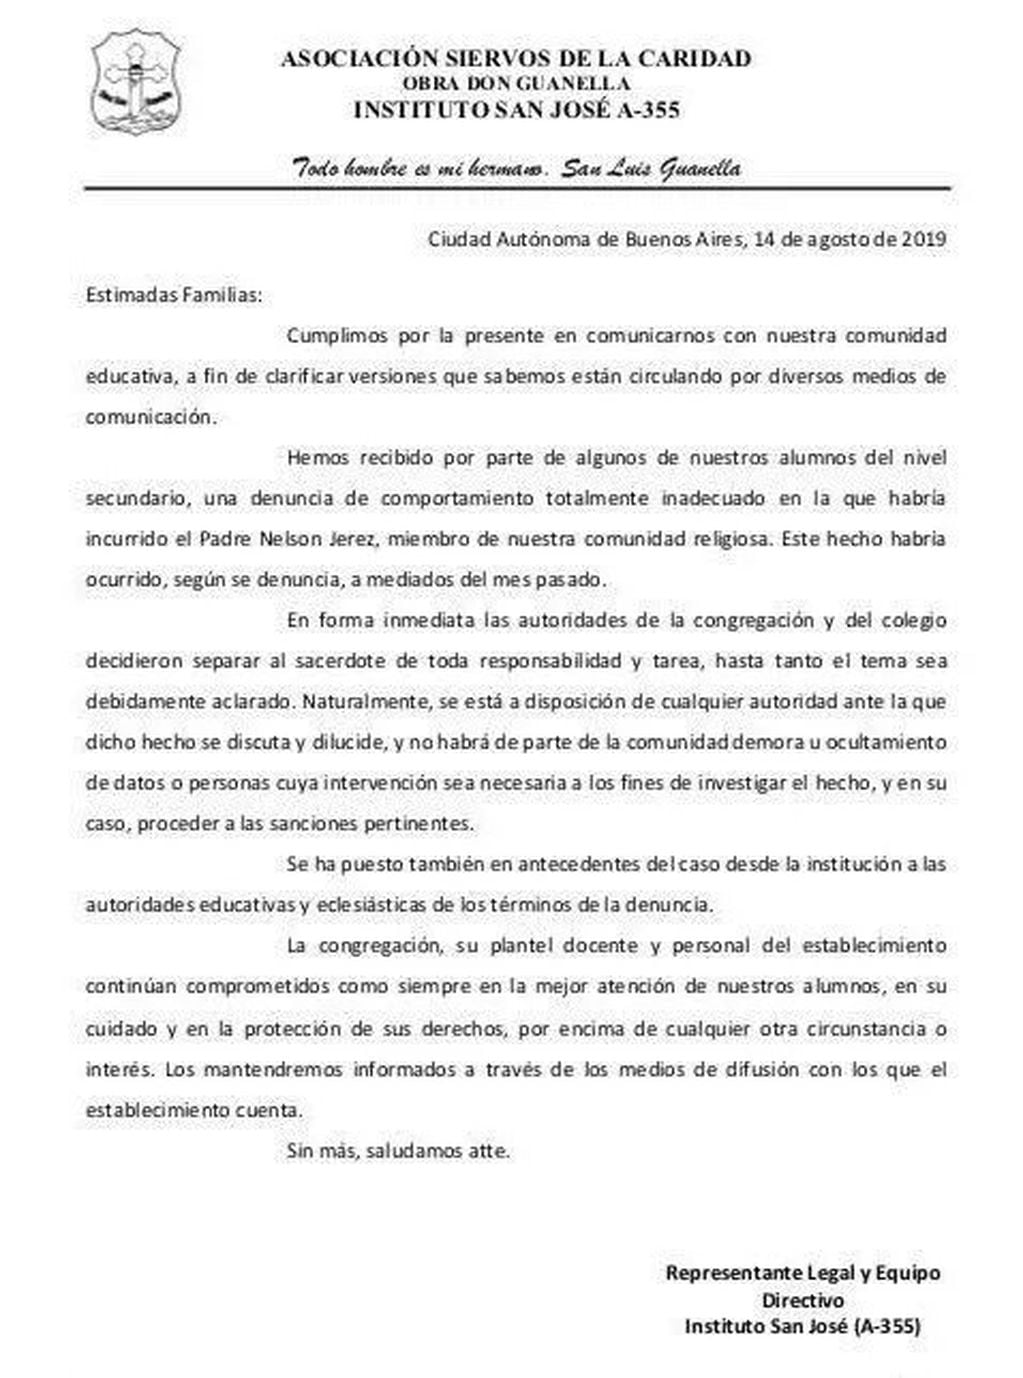 El sacerdote Nelson Jerez, acusado de abuso sexual en Liniers (Web)